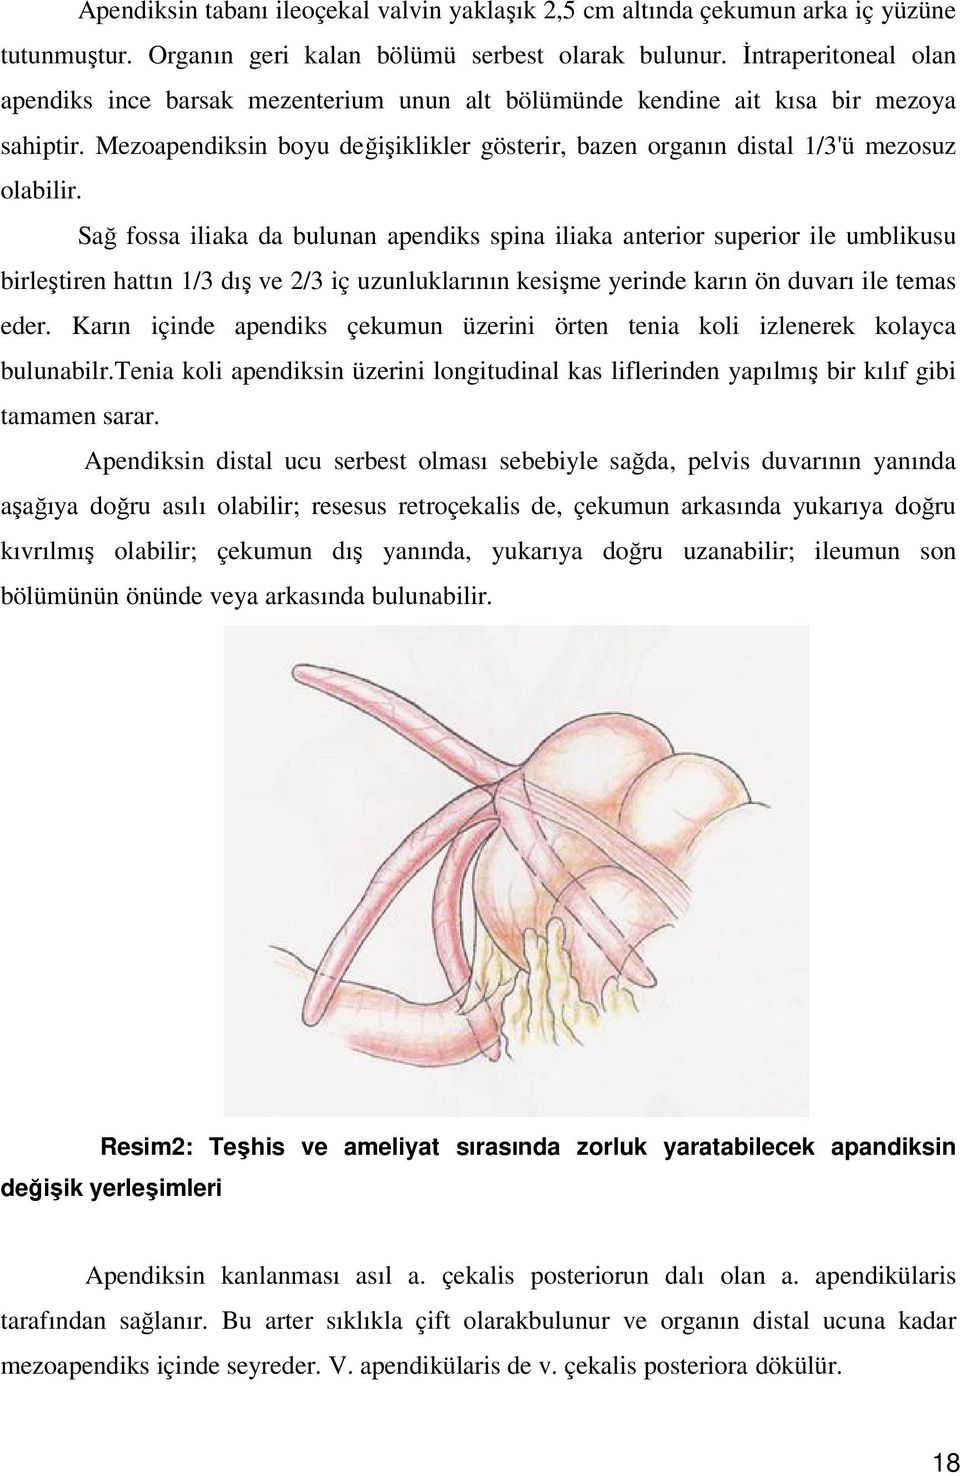 Sağ fossa iliaka da bulunan apendiks spina iliaka anterior superior ile umblikusu birleştiren hattın 1/3 dış ve 2/3 iç uzunluklarının kesişme yerinde karın ön duvarı ile temas eder.